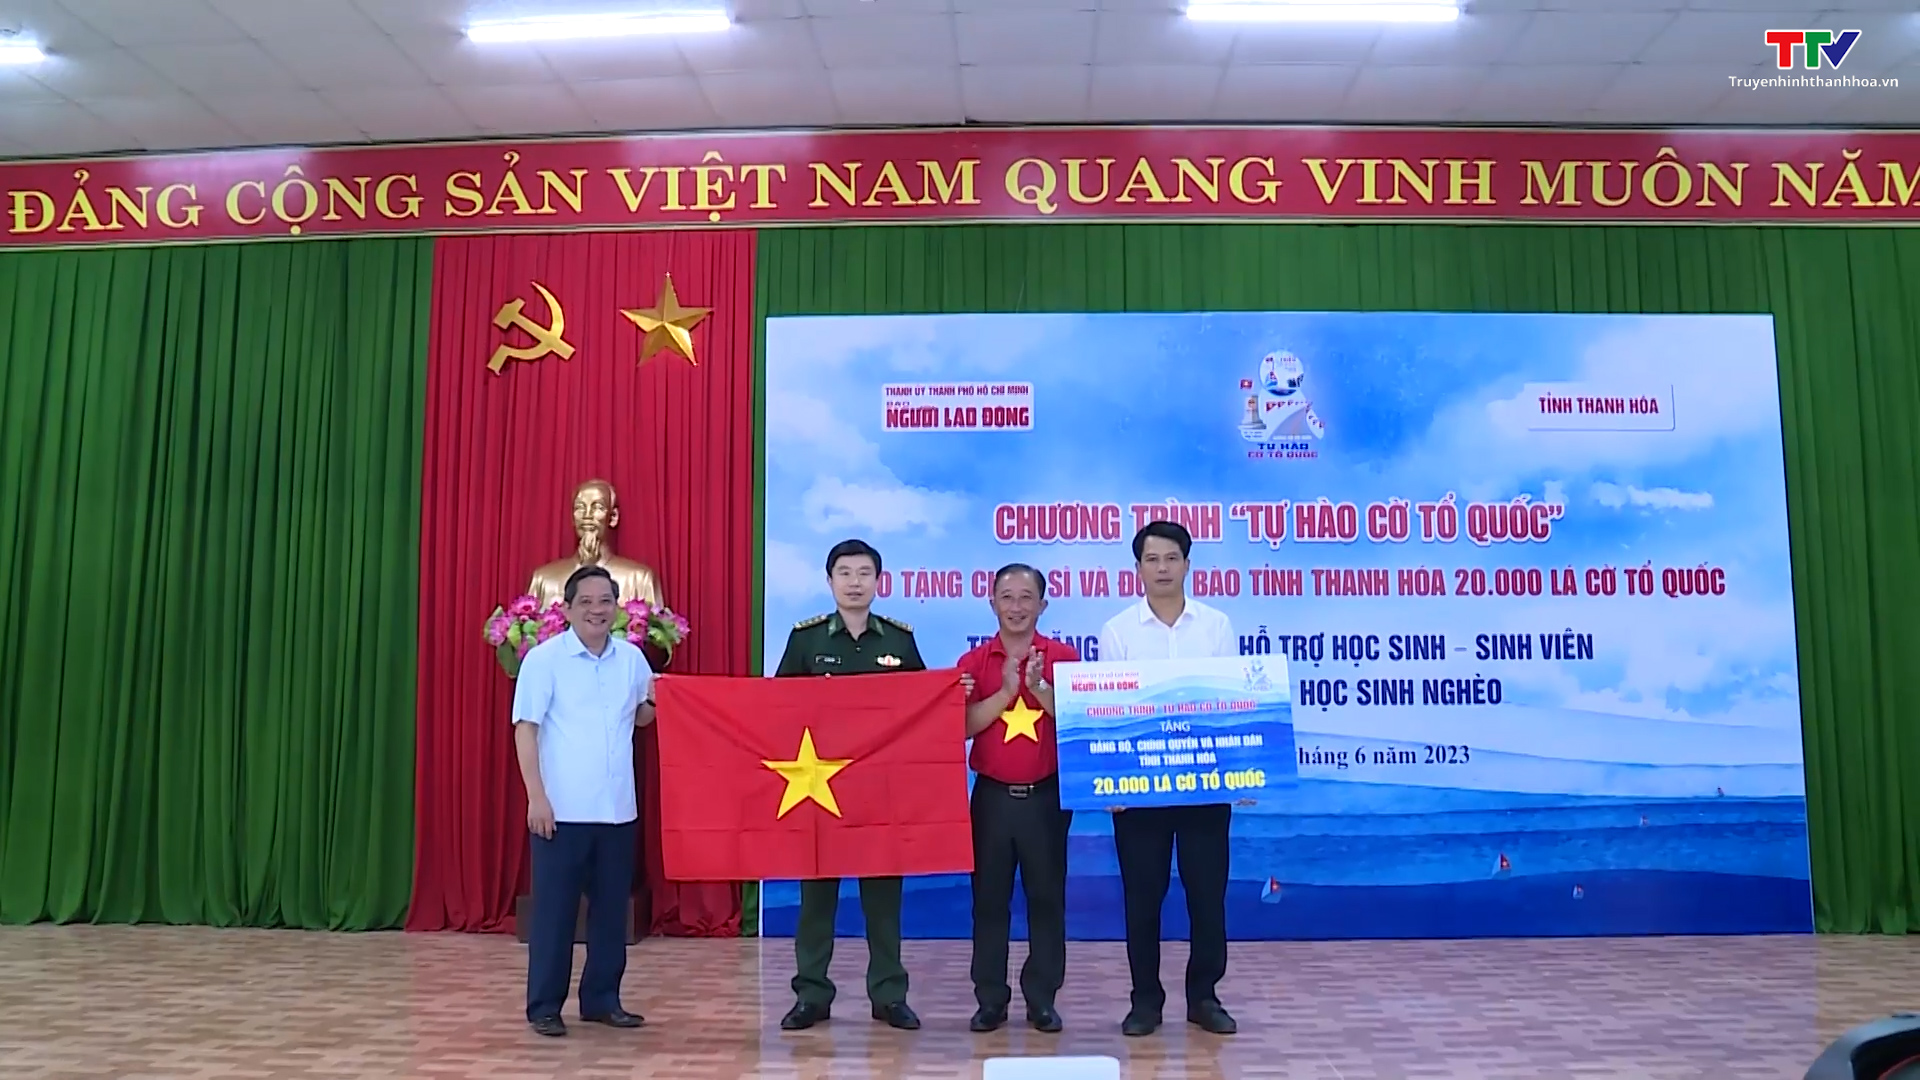 Báo Người lao động trao tặng 20.000 lá cờ Tổ quốc cho tỉnh Thanh Hóa - Ảnh 4.